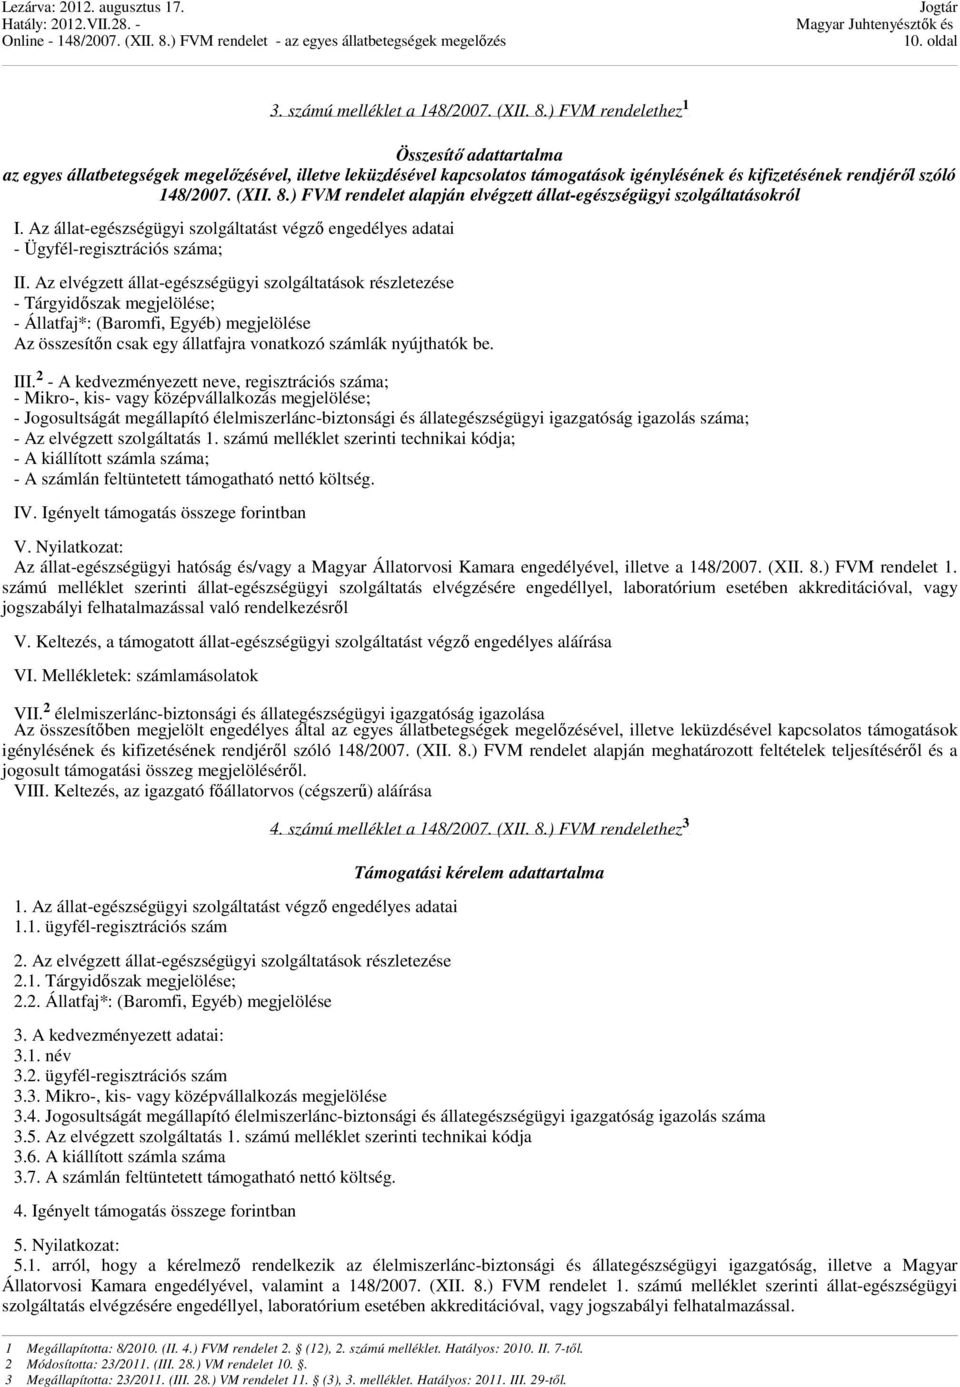 148/2007. (XII. 8.) FVM rendelet - PDF Ingyenes letöltés